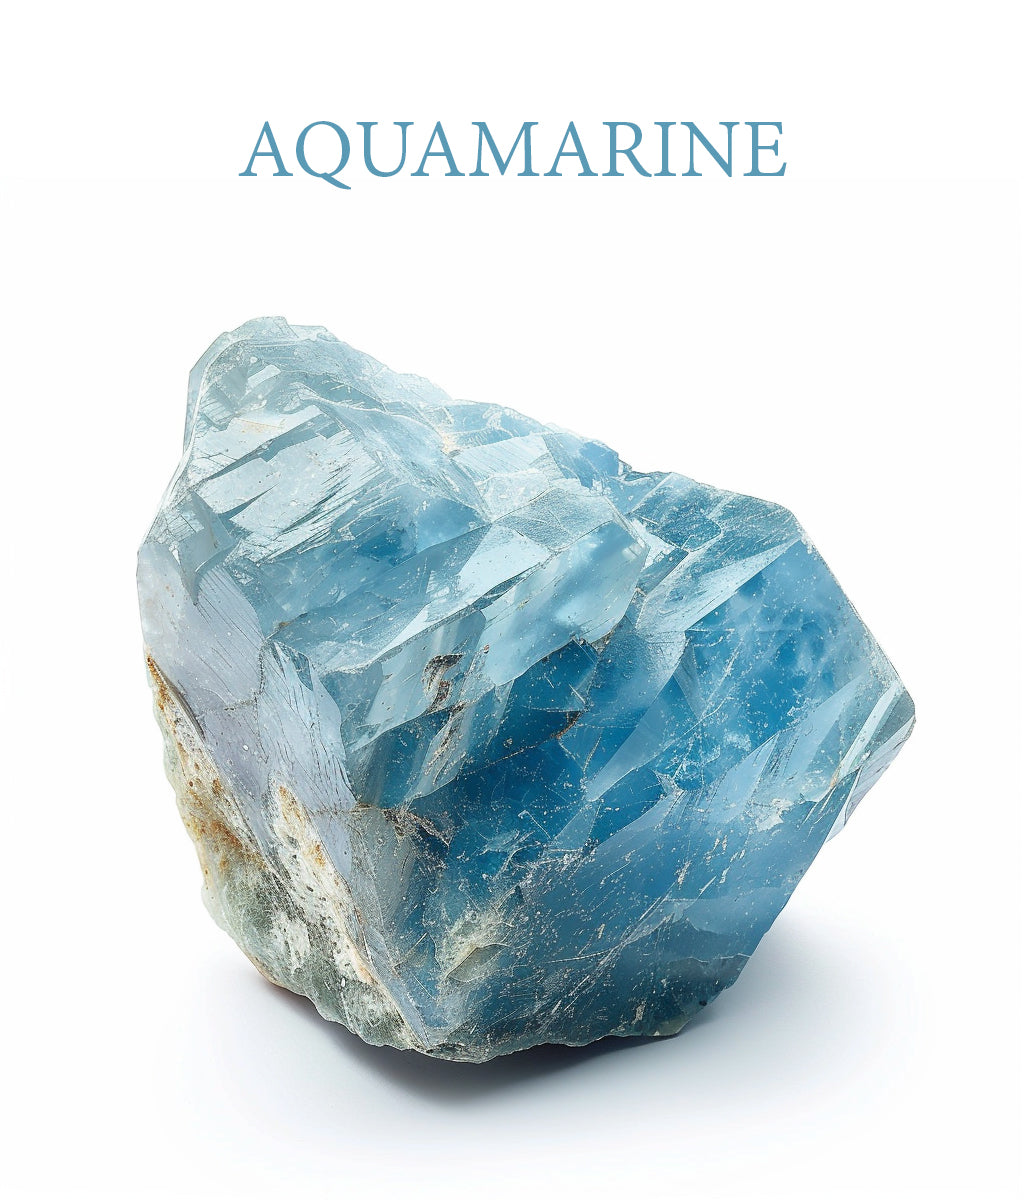 Aquamarinee